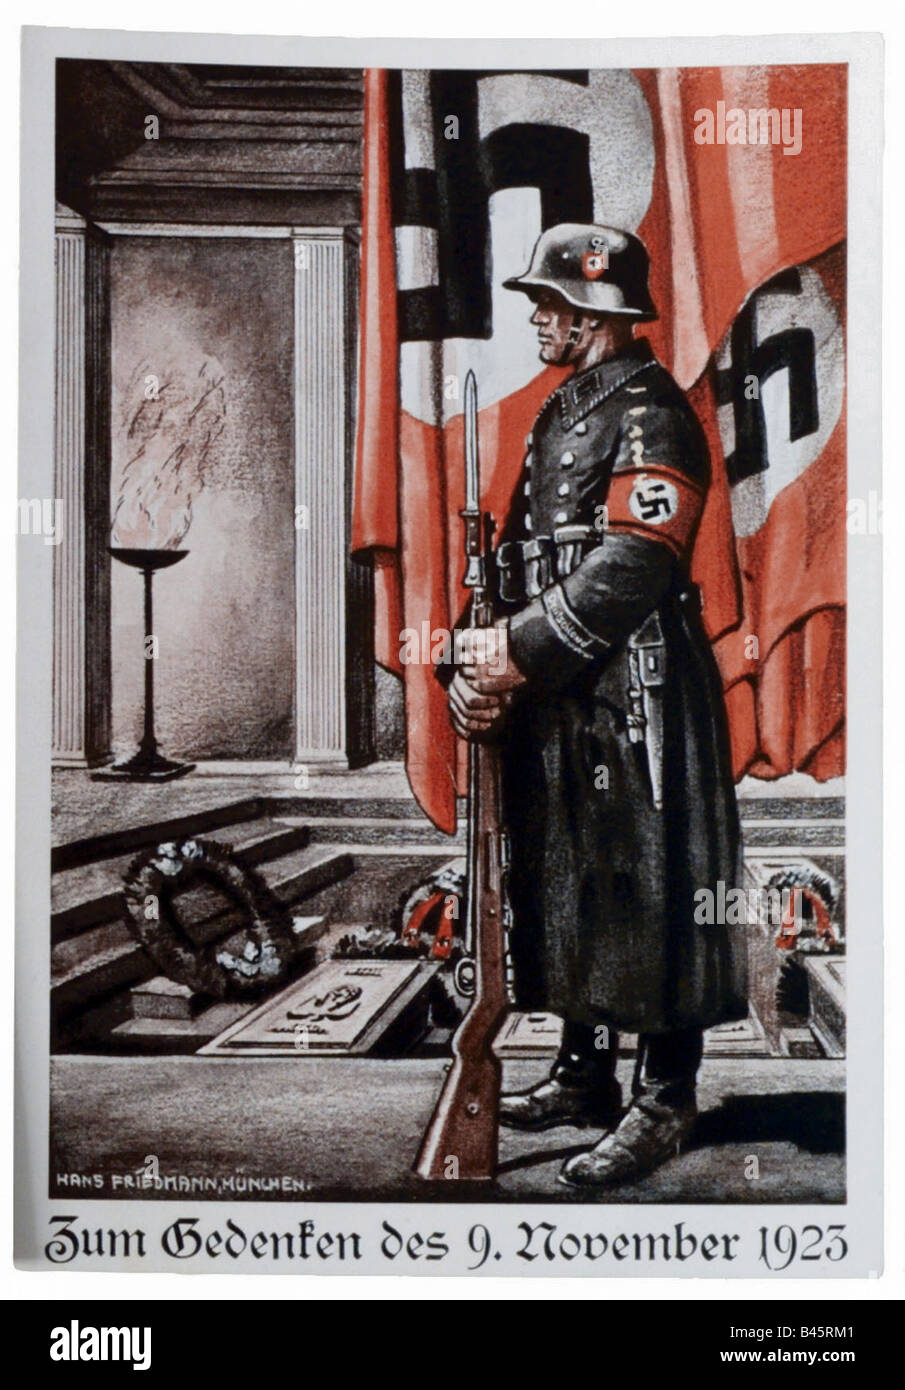 Nazismo/nazionalsocialismo, propaganda, rimeberanza alla Beer Hall Putsch 9.11.1923, disegno Di Friedmann, Monaco 1930s, 30s, Germania nazista, Terzo Reich, Foto Stock